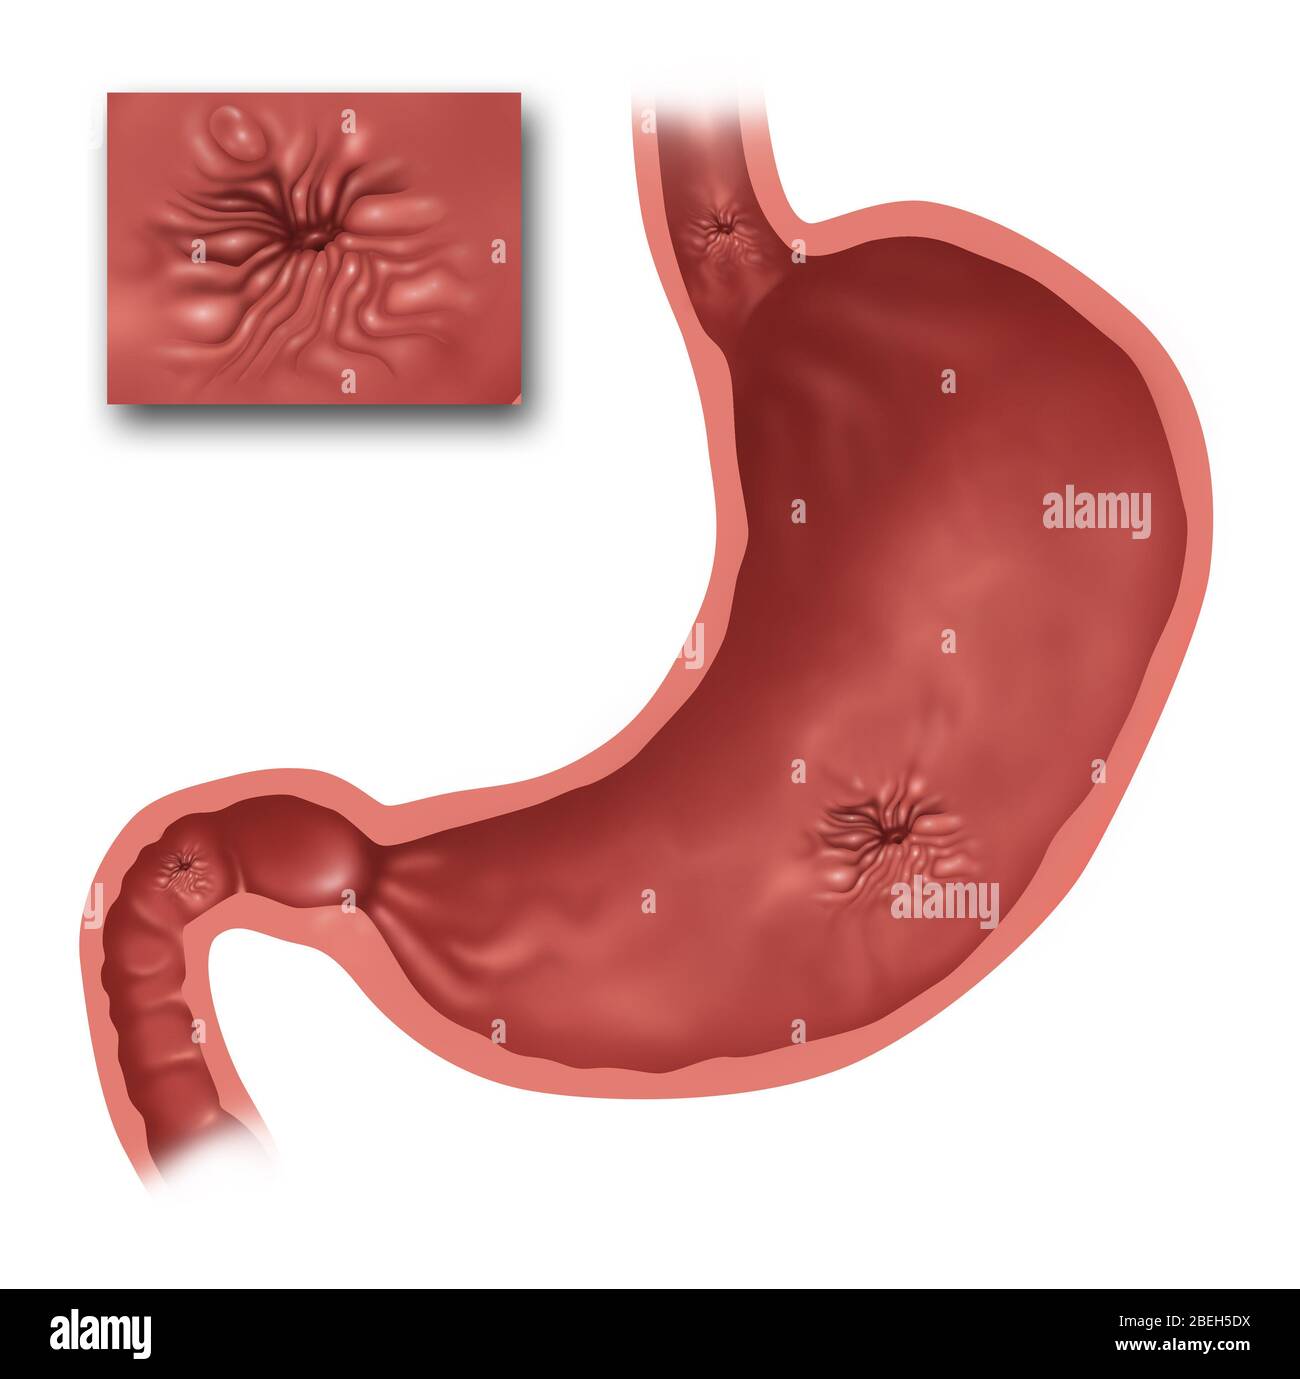 Illustrazione dello stomaco con diverse ulcere presenti. In alto c'è  l'esofago e appena sotto si trova un'ulcera esofagea. Nello stomaco è  presente un'ulcera gastrica, e in basso a sinistra è presente un'ulcera